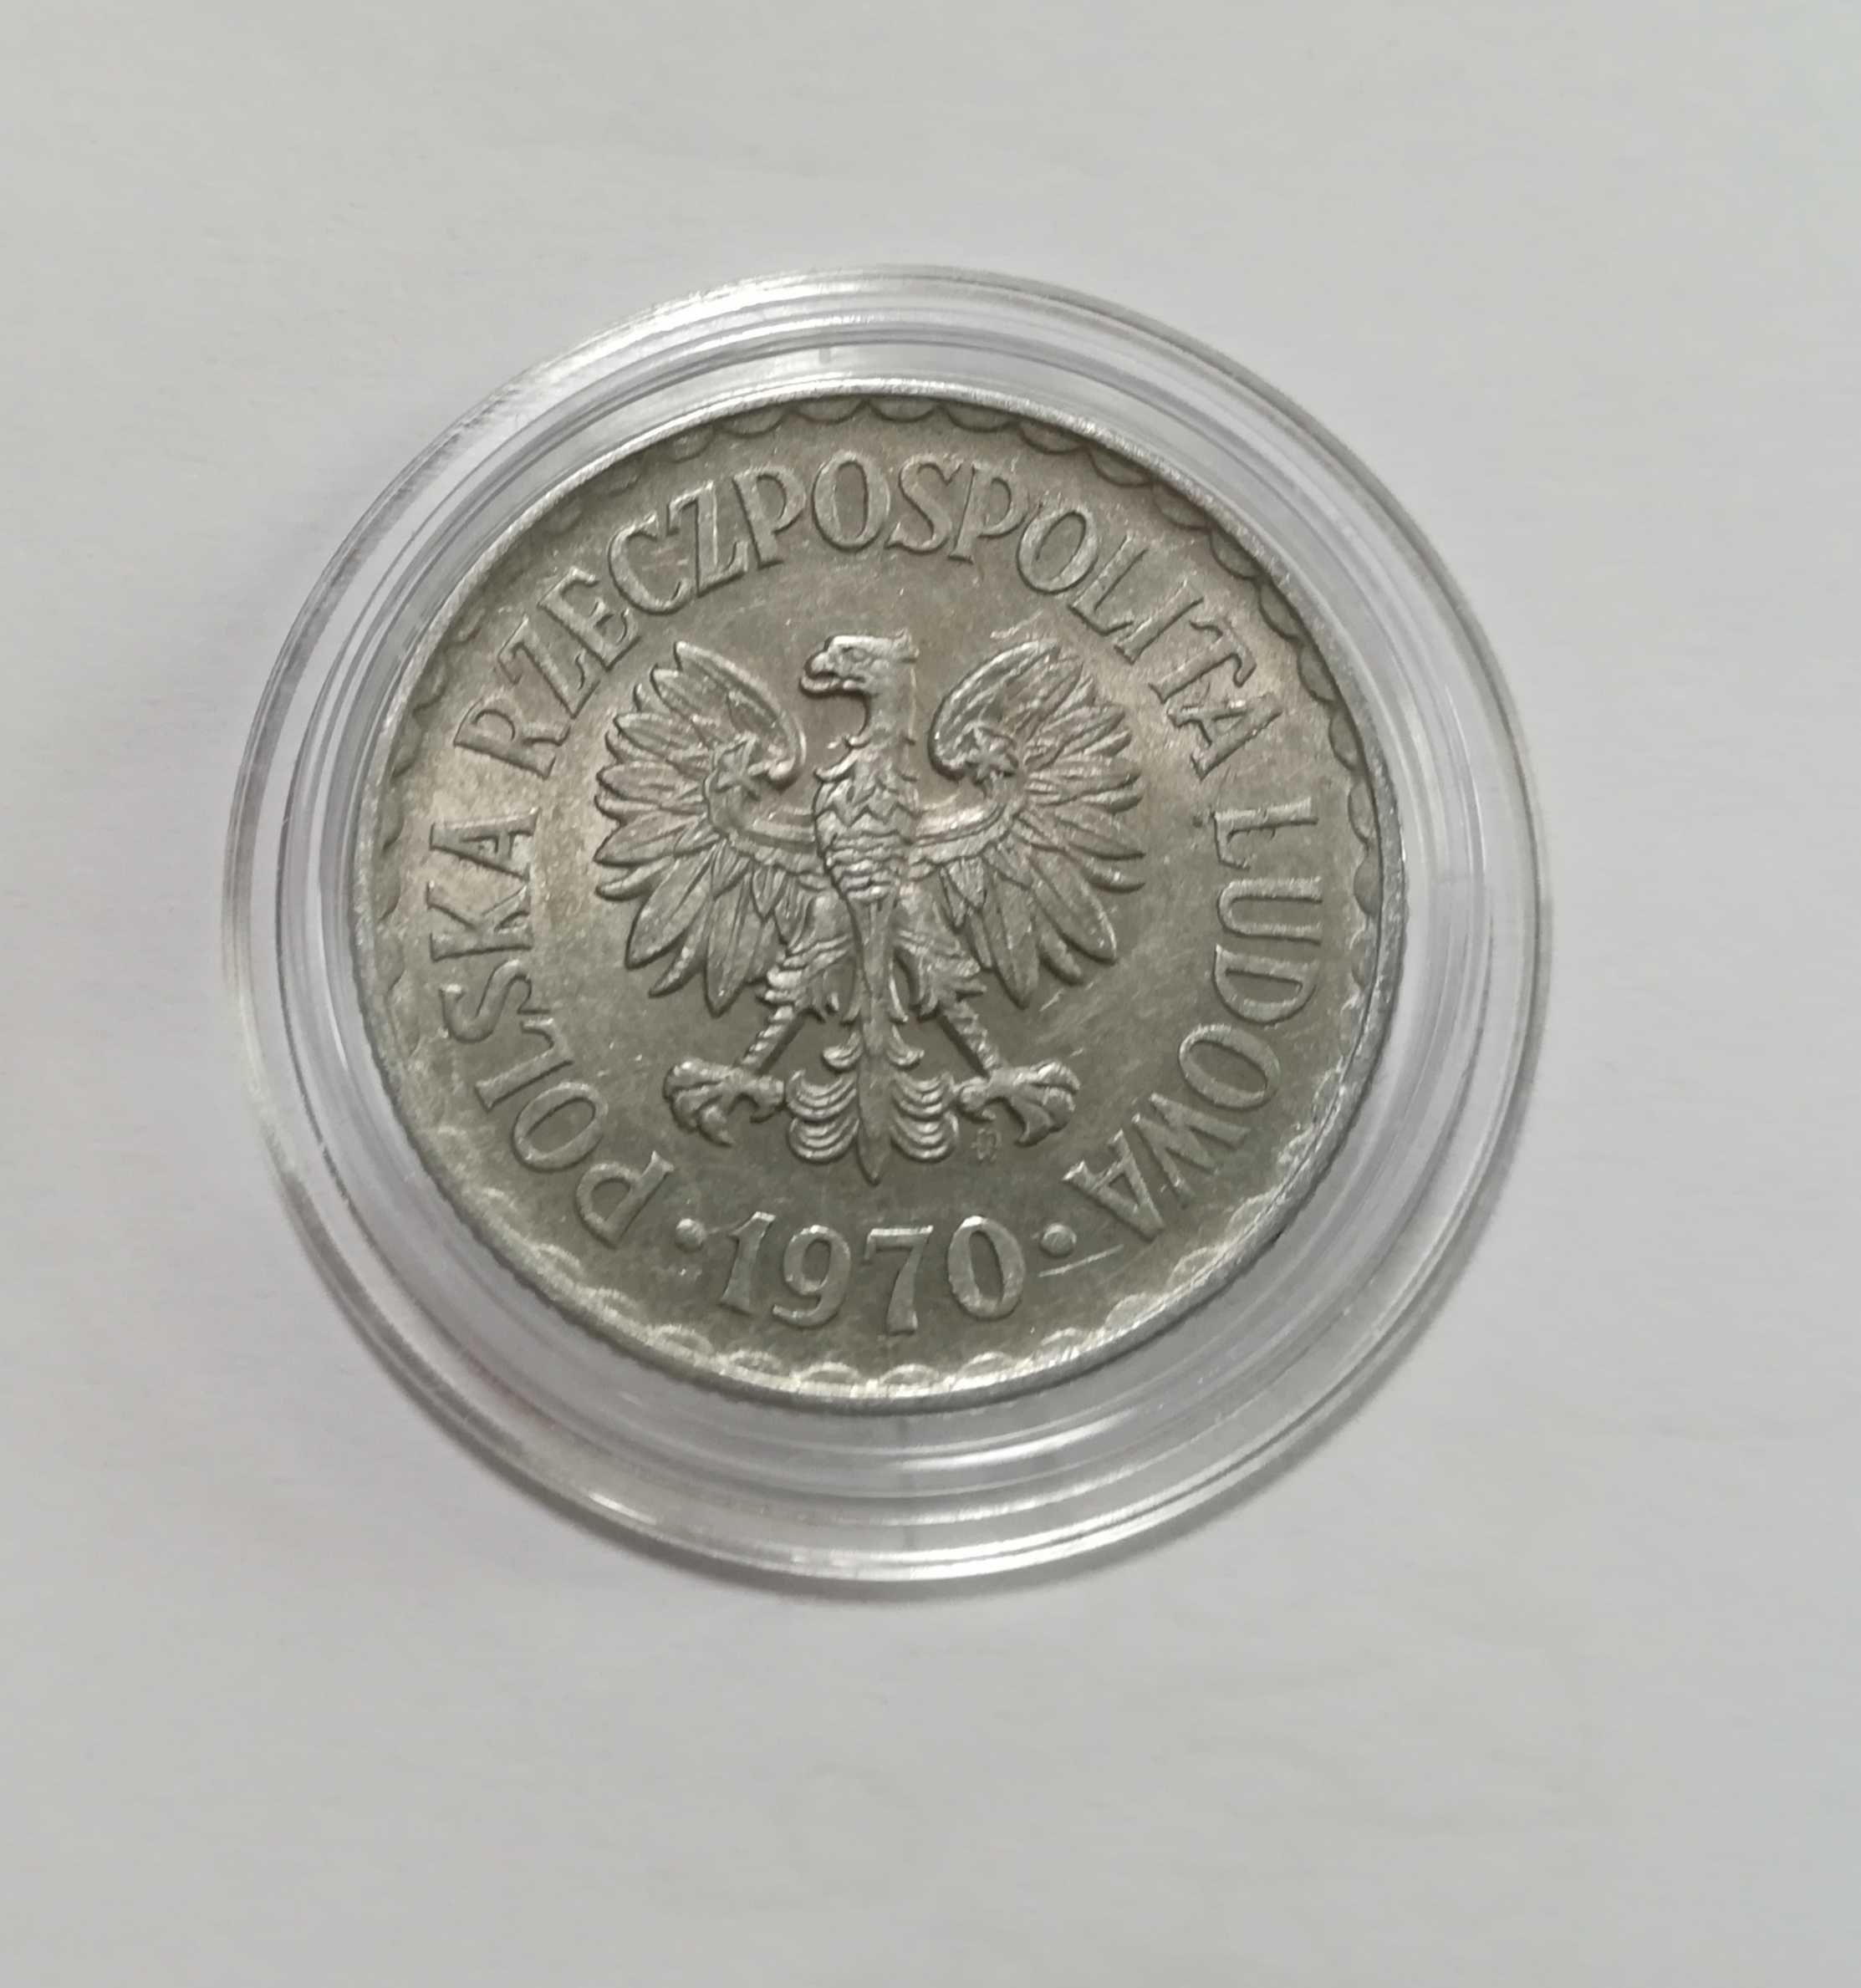 Moneta 1 zł z 1970 r, stan doskonały